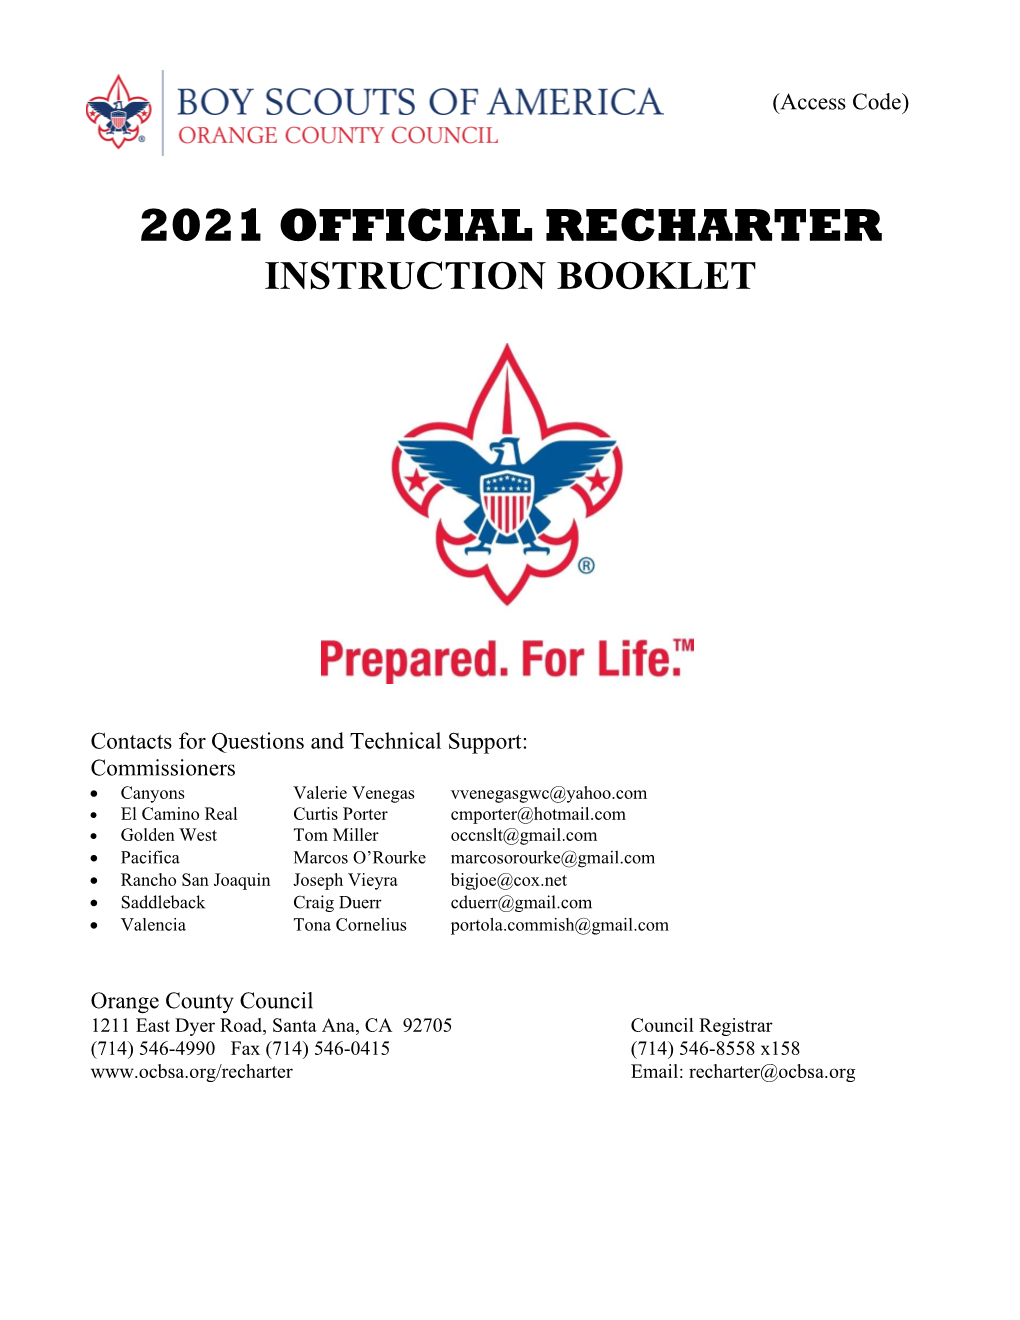 Official Recharter Packet